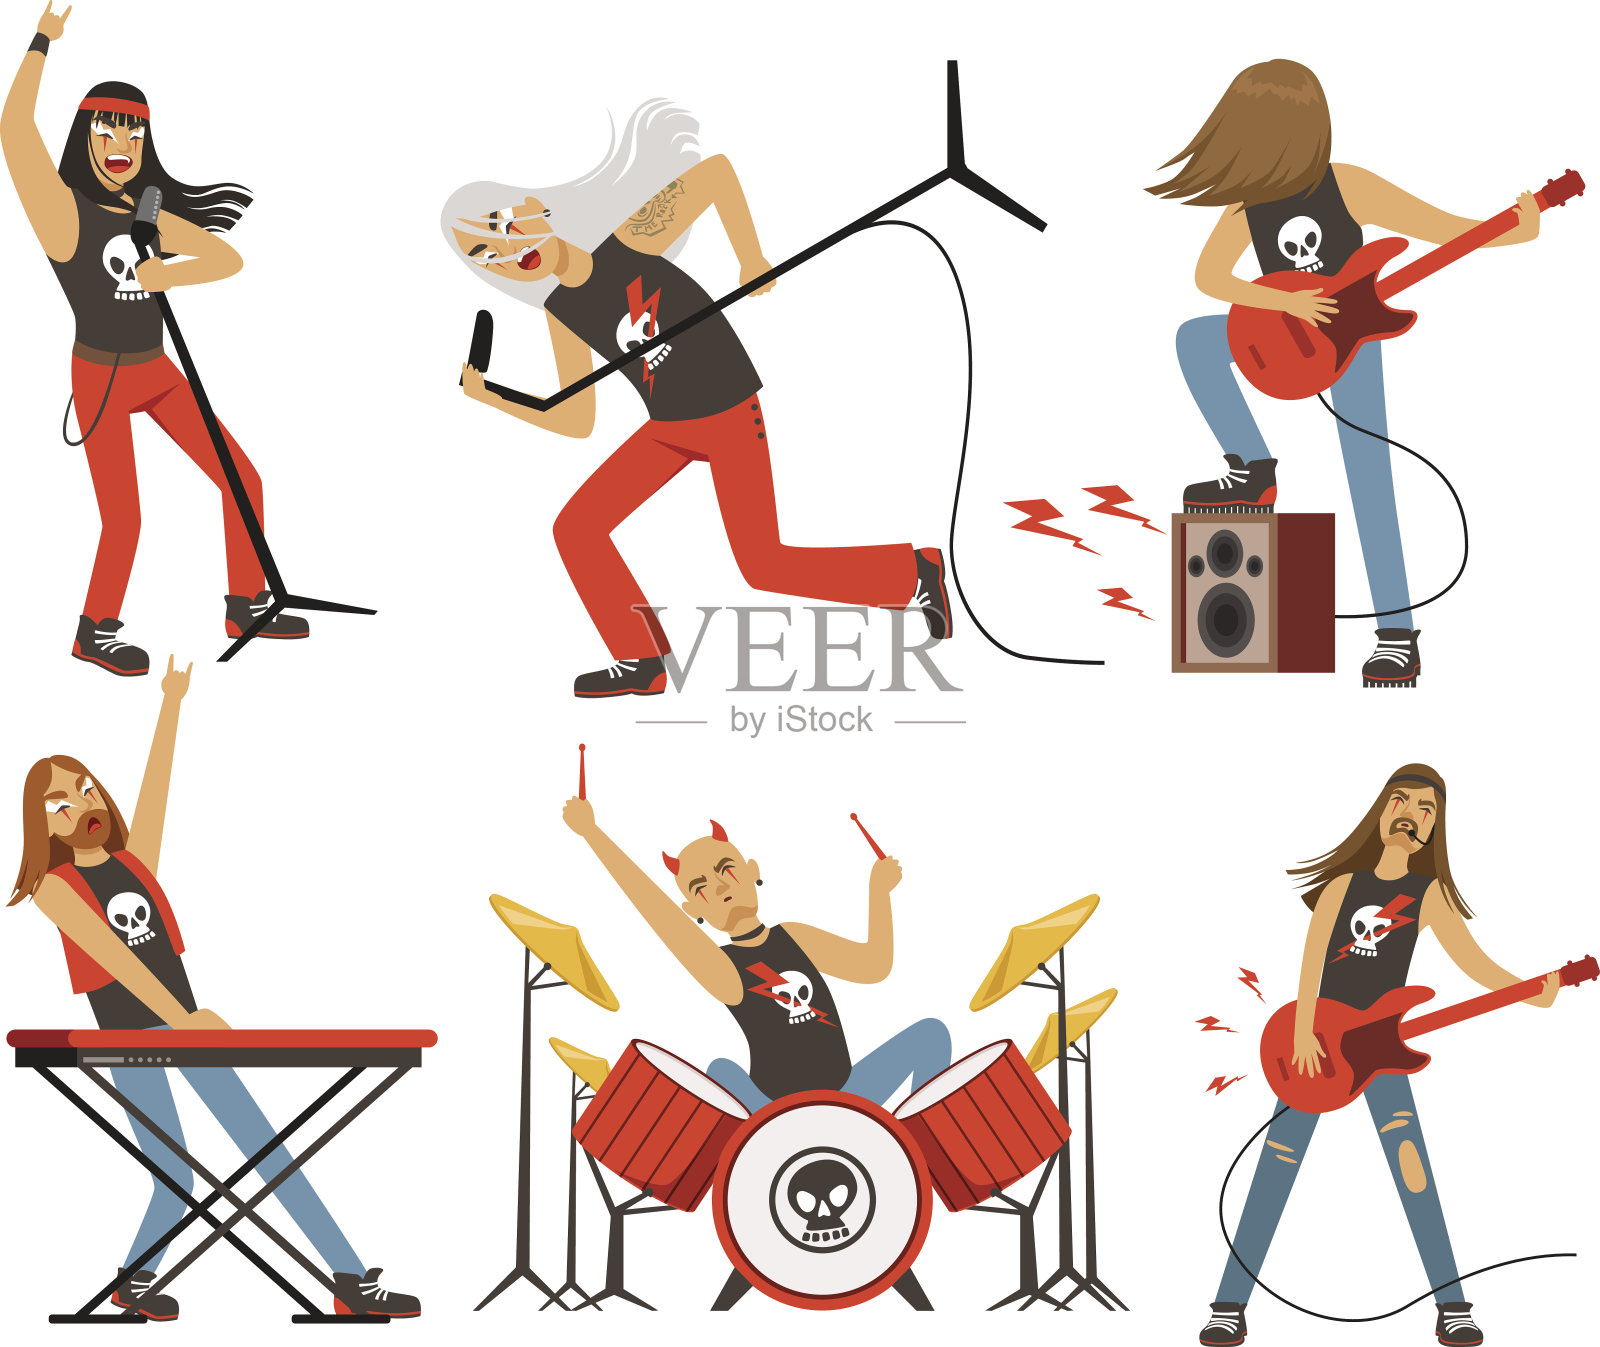 摇滚乐队里有趣的卡通人物。著名流行乐团的音乐家。向量组吉祥物插画图片素材